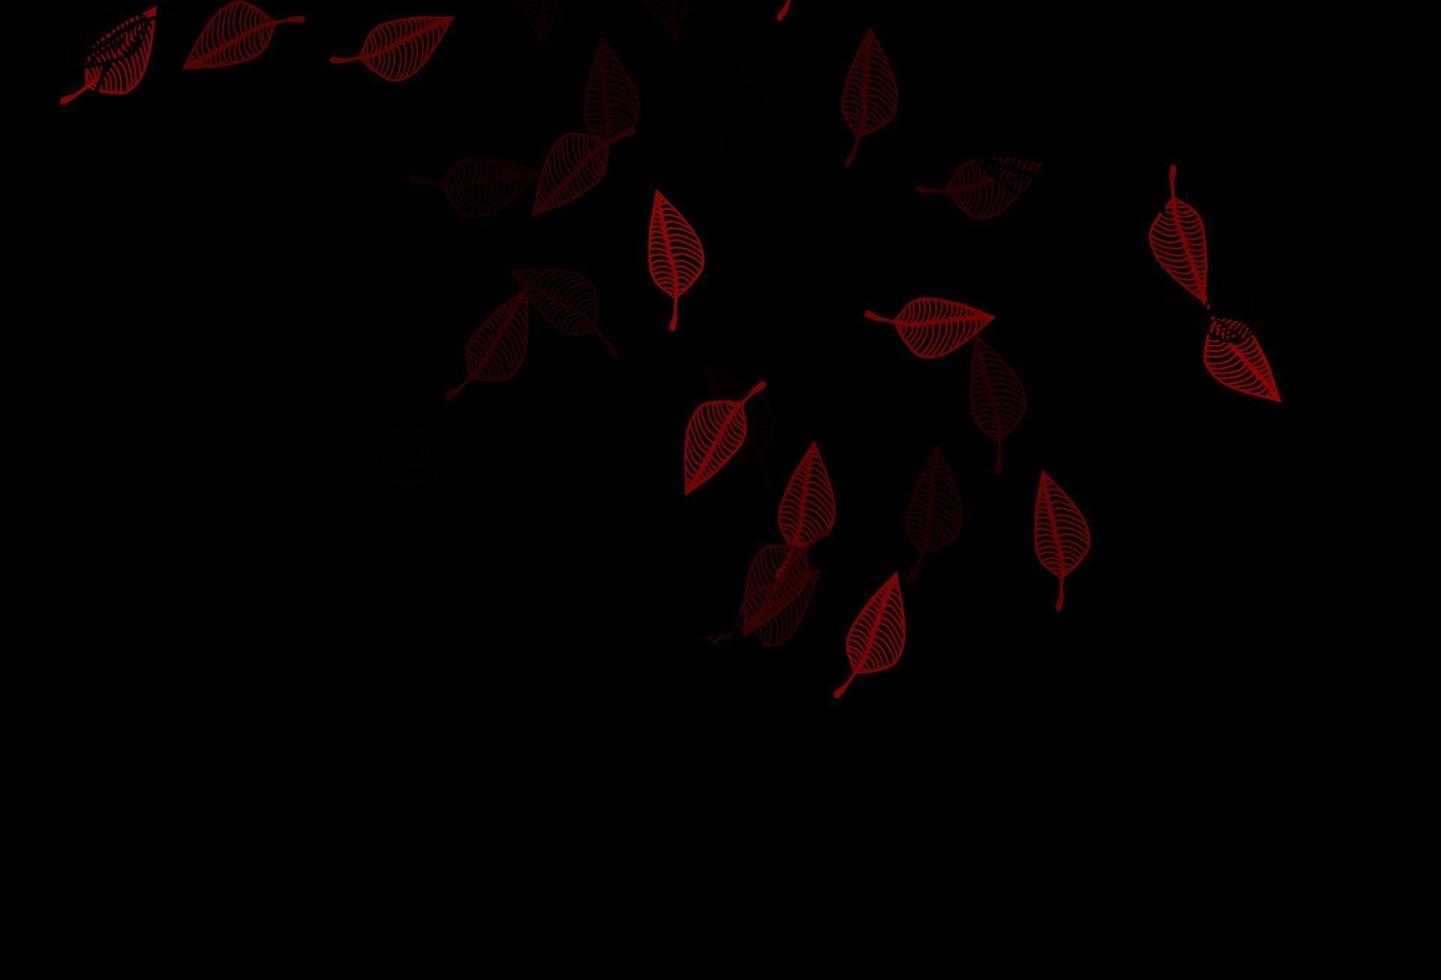 plantilla pintada a mano de vector rojo oscuro.